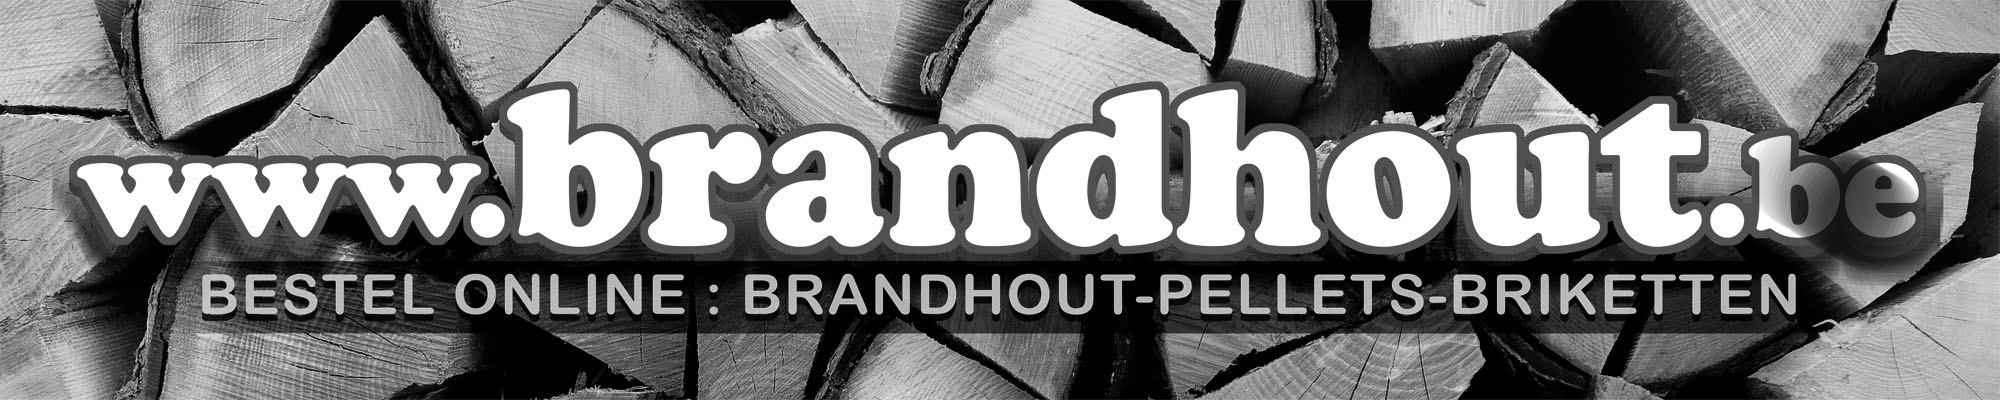 Brandhout